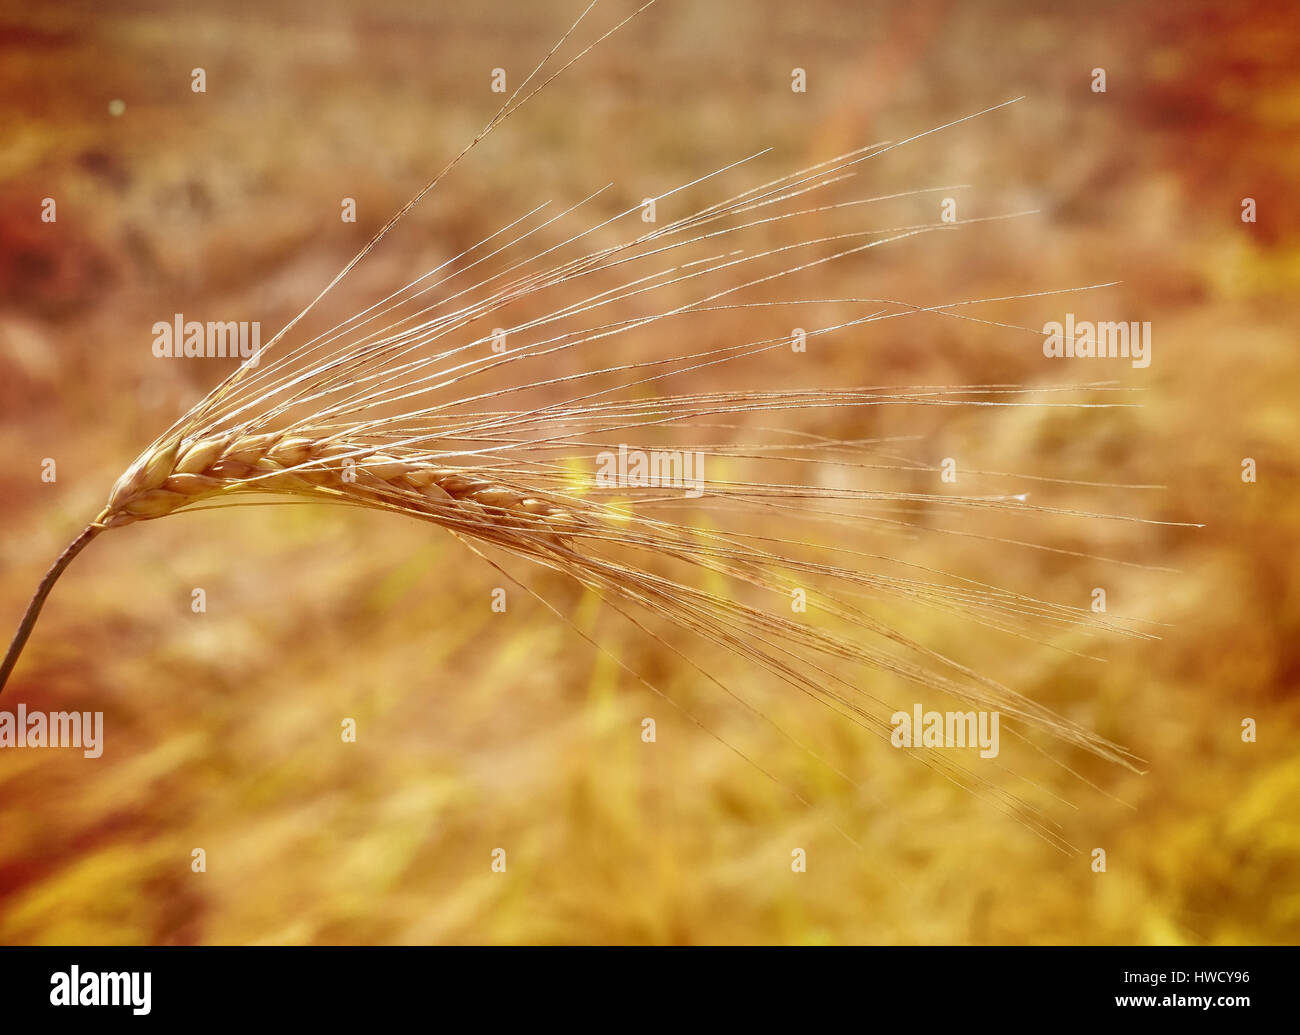 L'oreille du grain d'orge sur un champ de céréales avant la récolte, von Getreideähre Gerste auf einem Getreidefeld vor der Ernte Banque D'Images